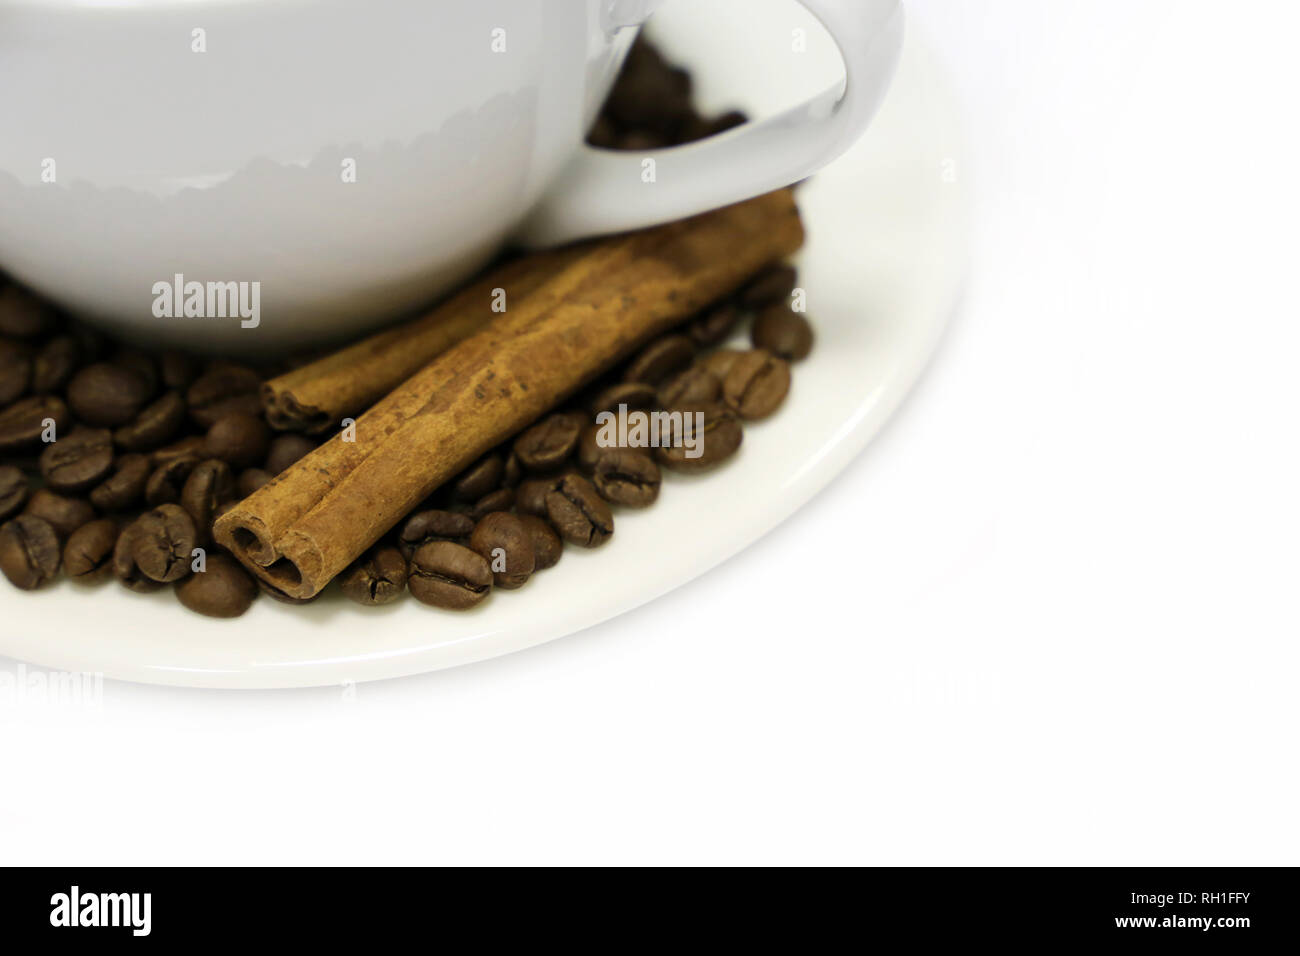 Tazza da caffè, caffè torrefatto in grani e bastoncini di cannella, isolato su sfondo bianco. Concetto di colazione, mattina felice Foto Stock